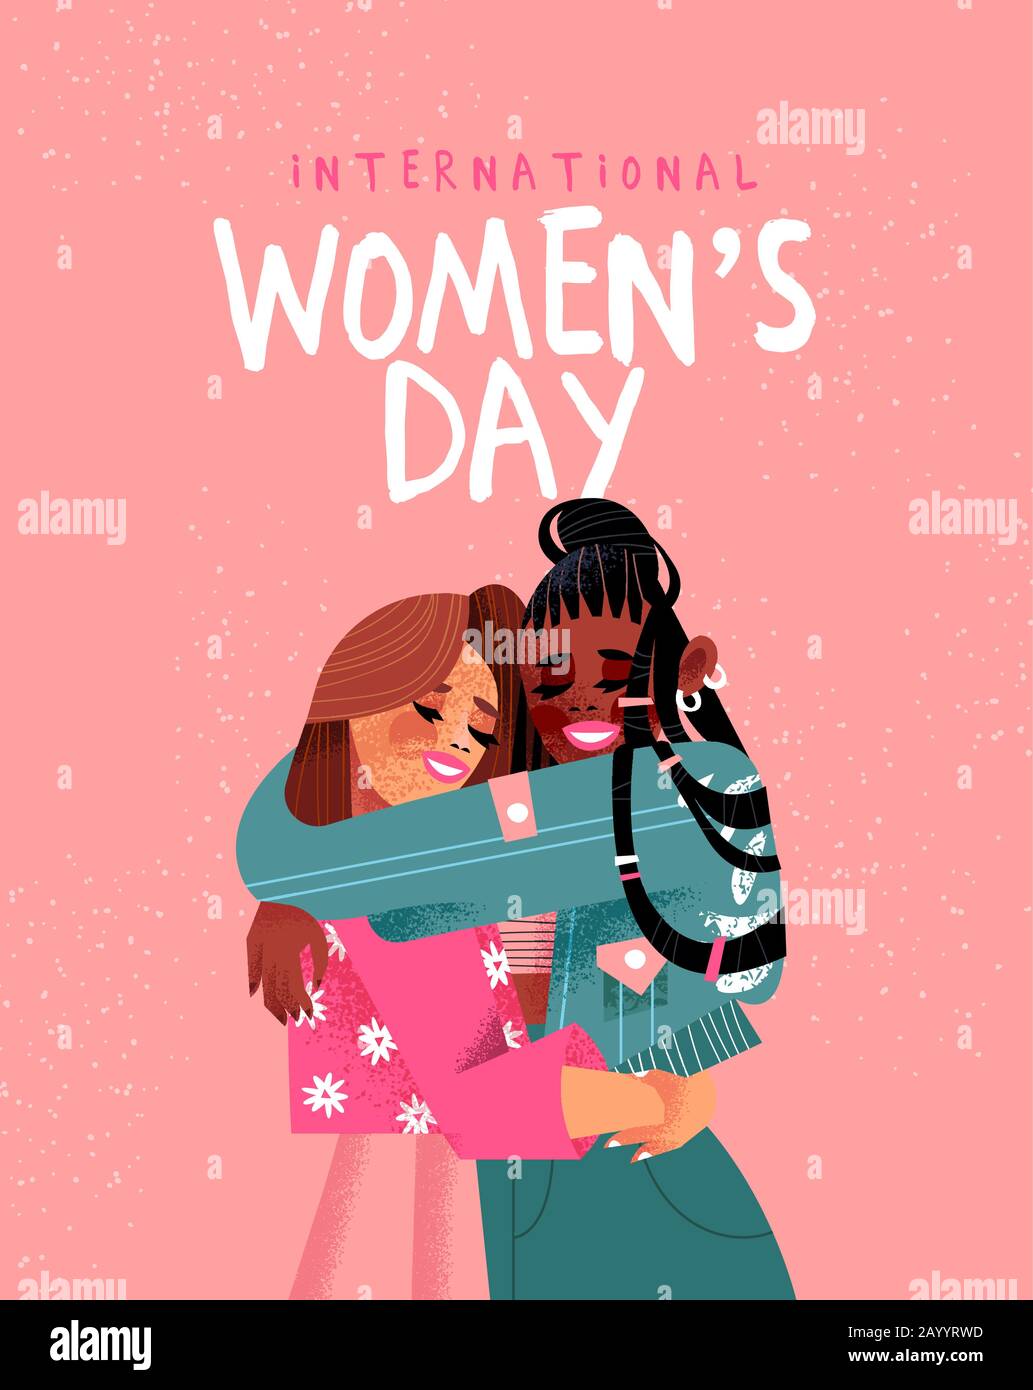 Internationale Grußkarte für den Frauentag von jungen Freundinnen, die ein von der Hand gezeichnetes Freundschaftskonzept für den Urlaub mit den Rechten der Frauen umarmen. Stock Vektor